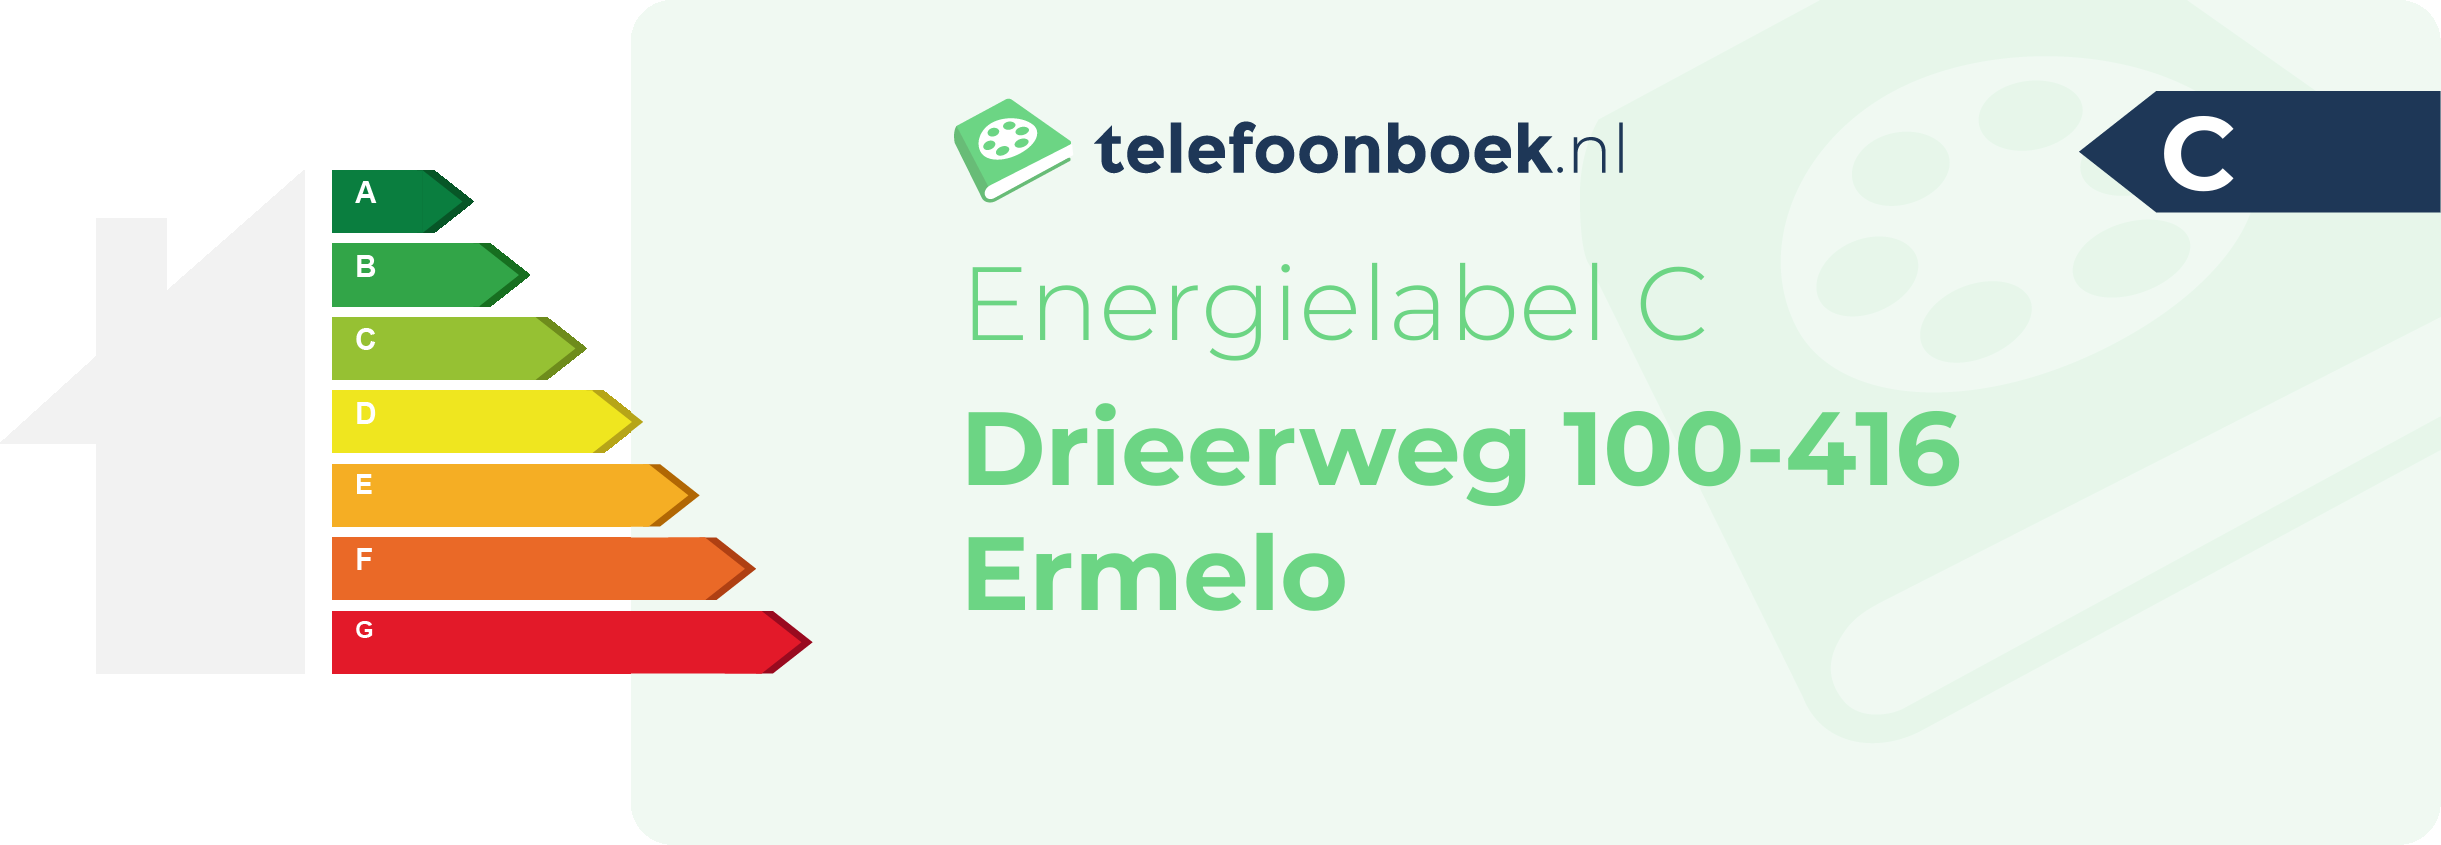 Energielabel Drieerweg 100-416 Ermelo